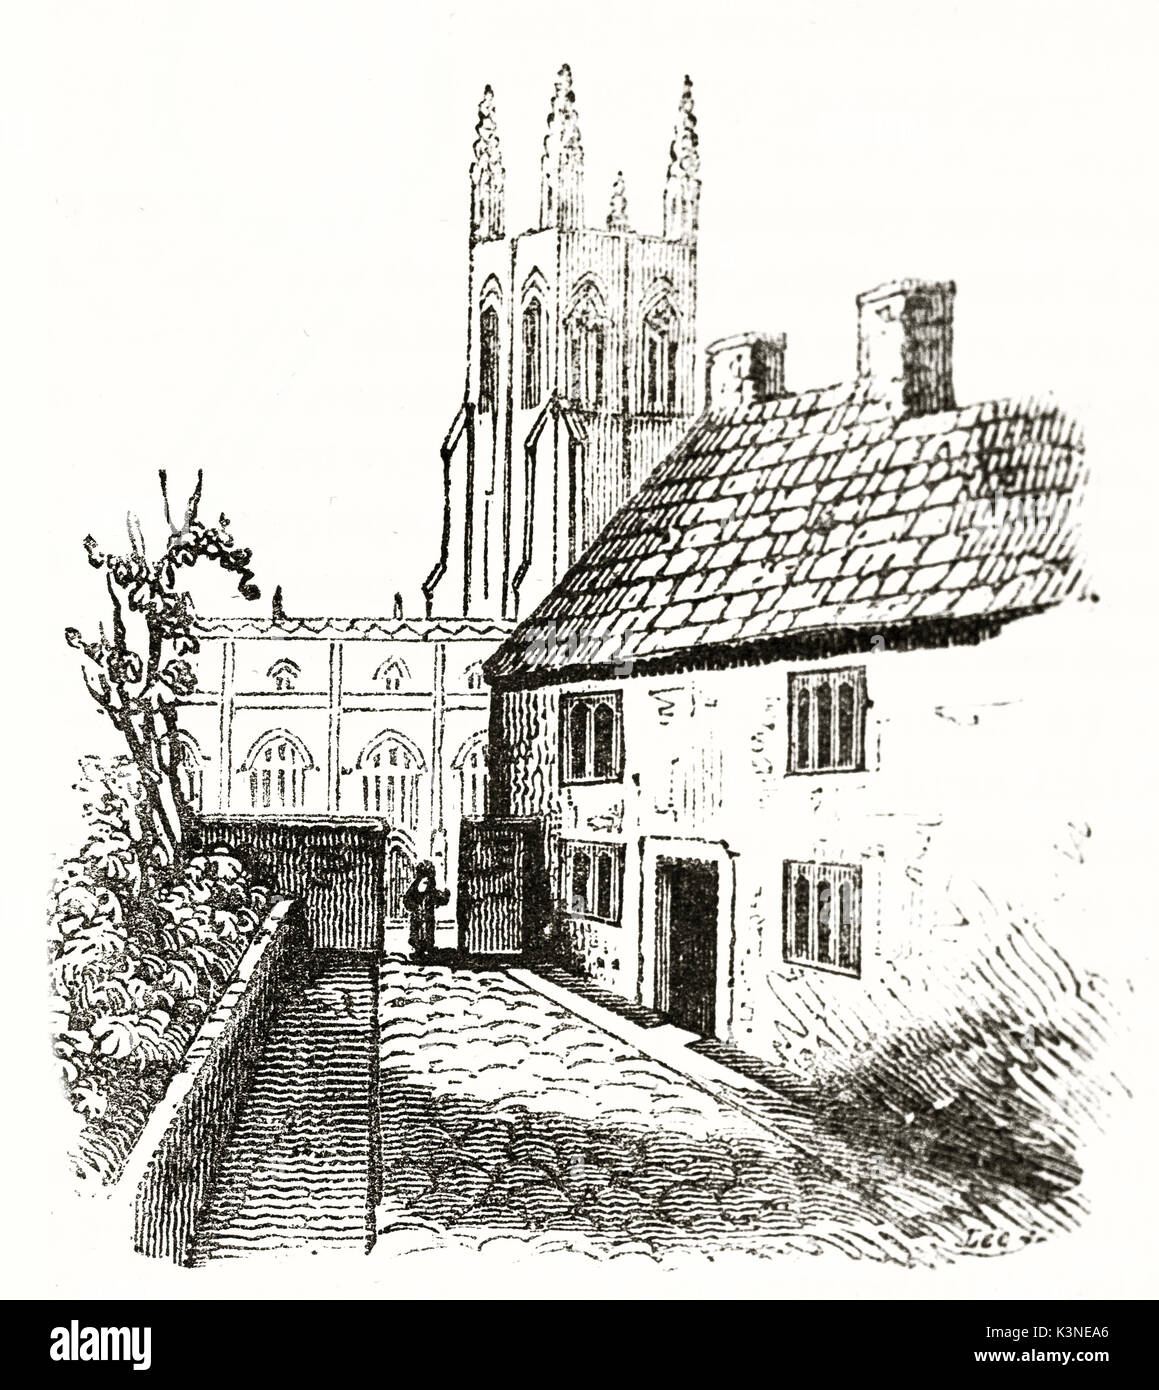 Mittelalterliche einfaches Haus mit einem kleinen Hof auf die Seite und eine towerbell für den Hintergrund. John Locke home Geburt in Wrington Somerset England. Auf Magasin Pittoresque Paris 1839 veröffentlicht. Stockfoto